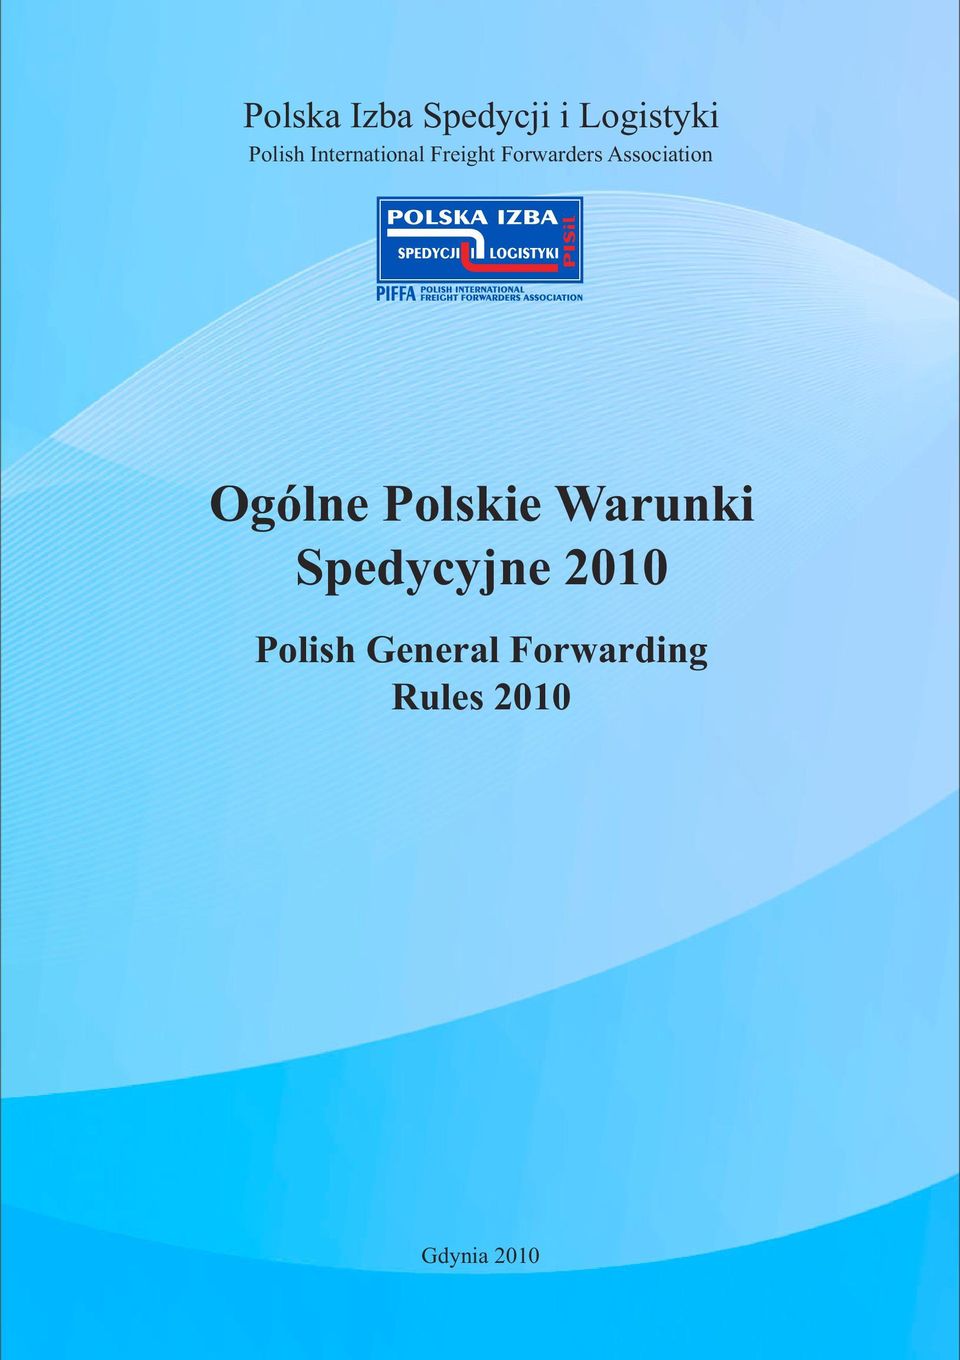 Association Ogólne Polskie Warunki